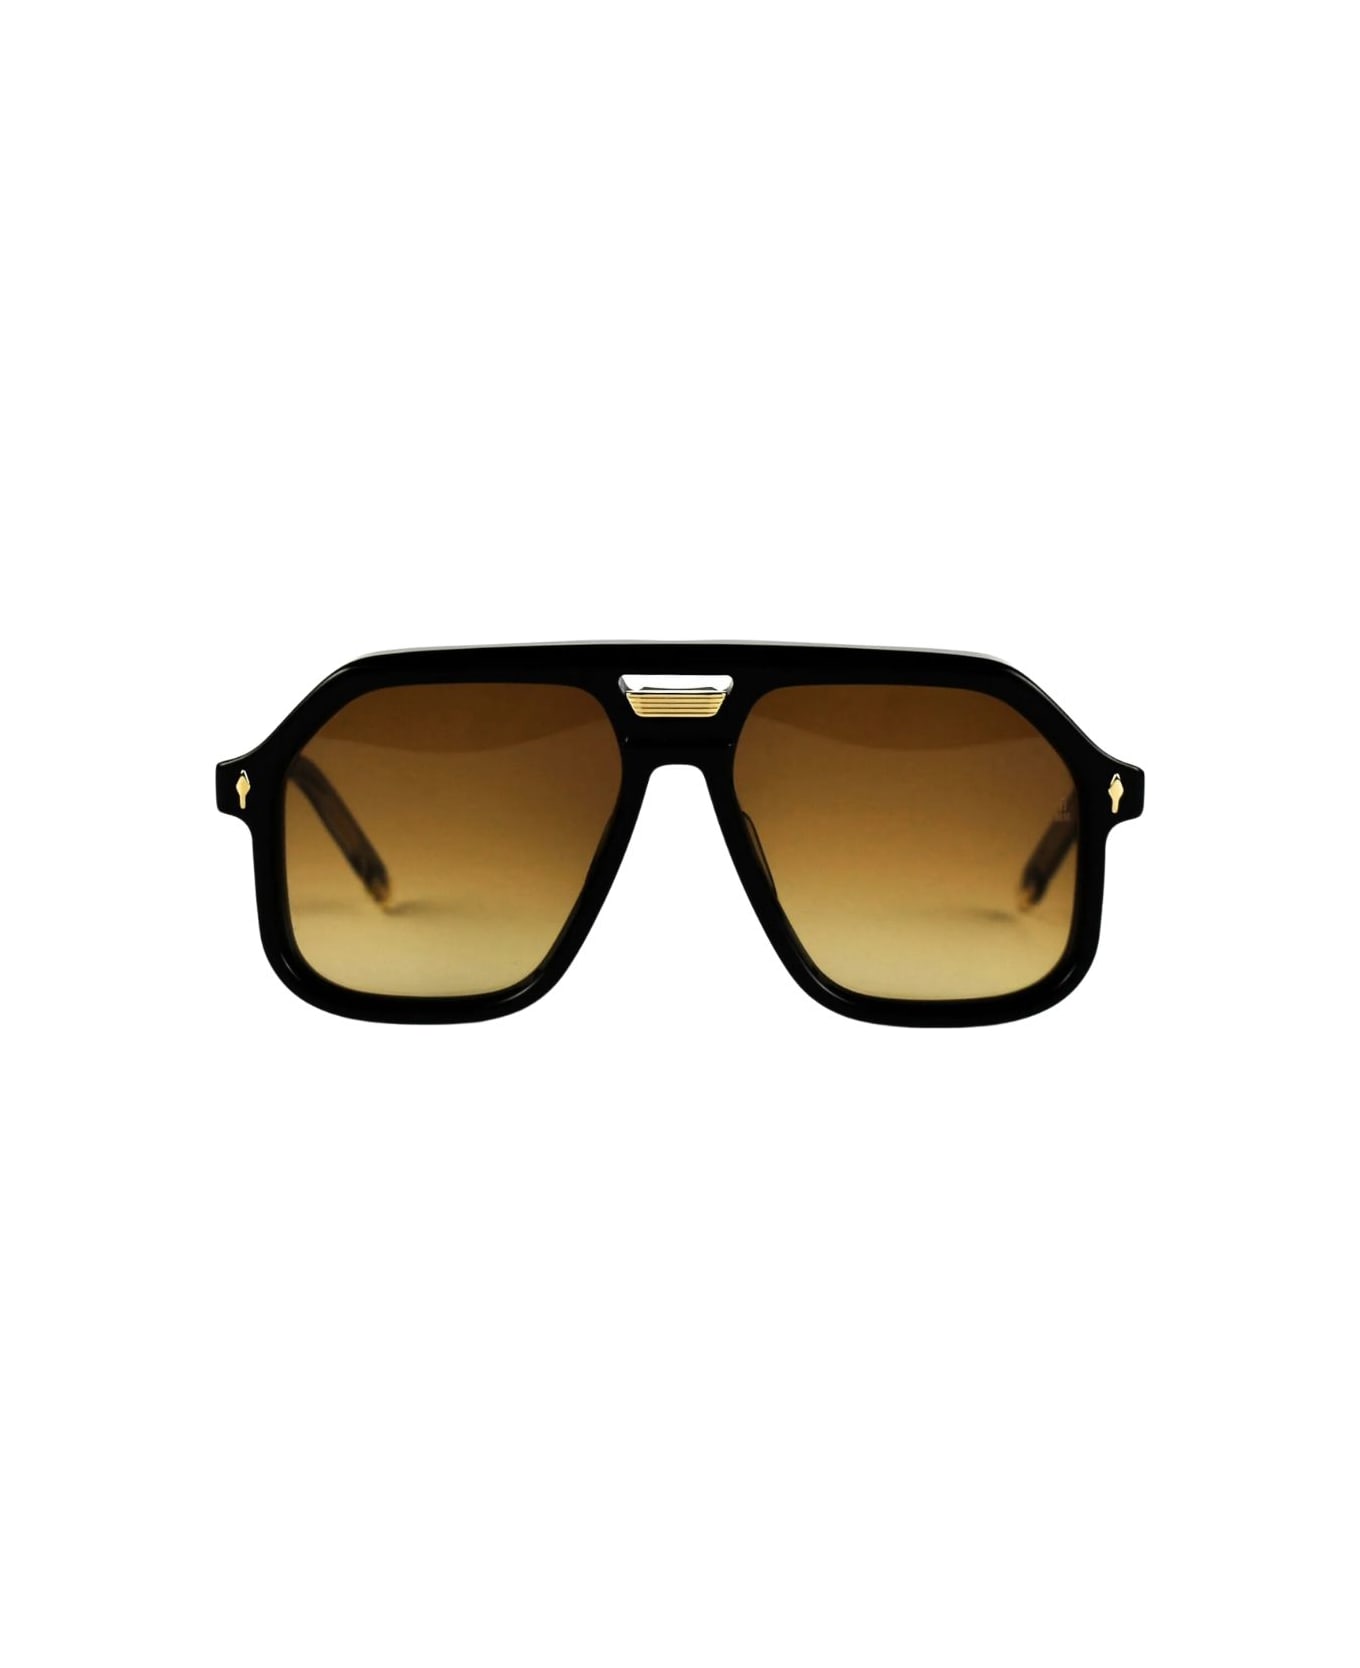 Jacques Marie Mage Casius Sunglasses - T Beluga